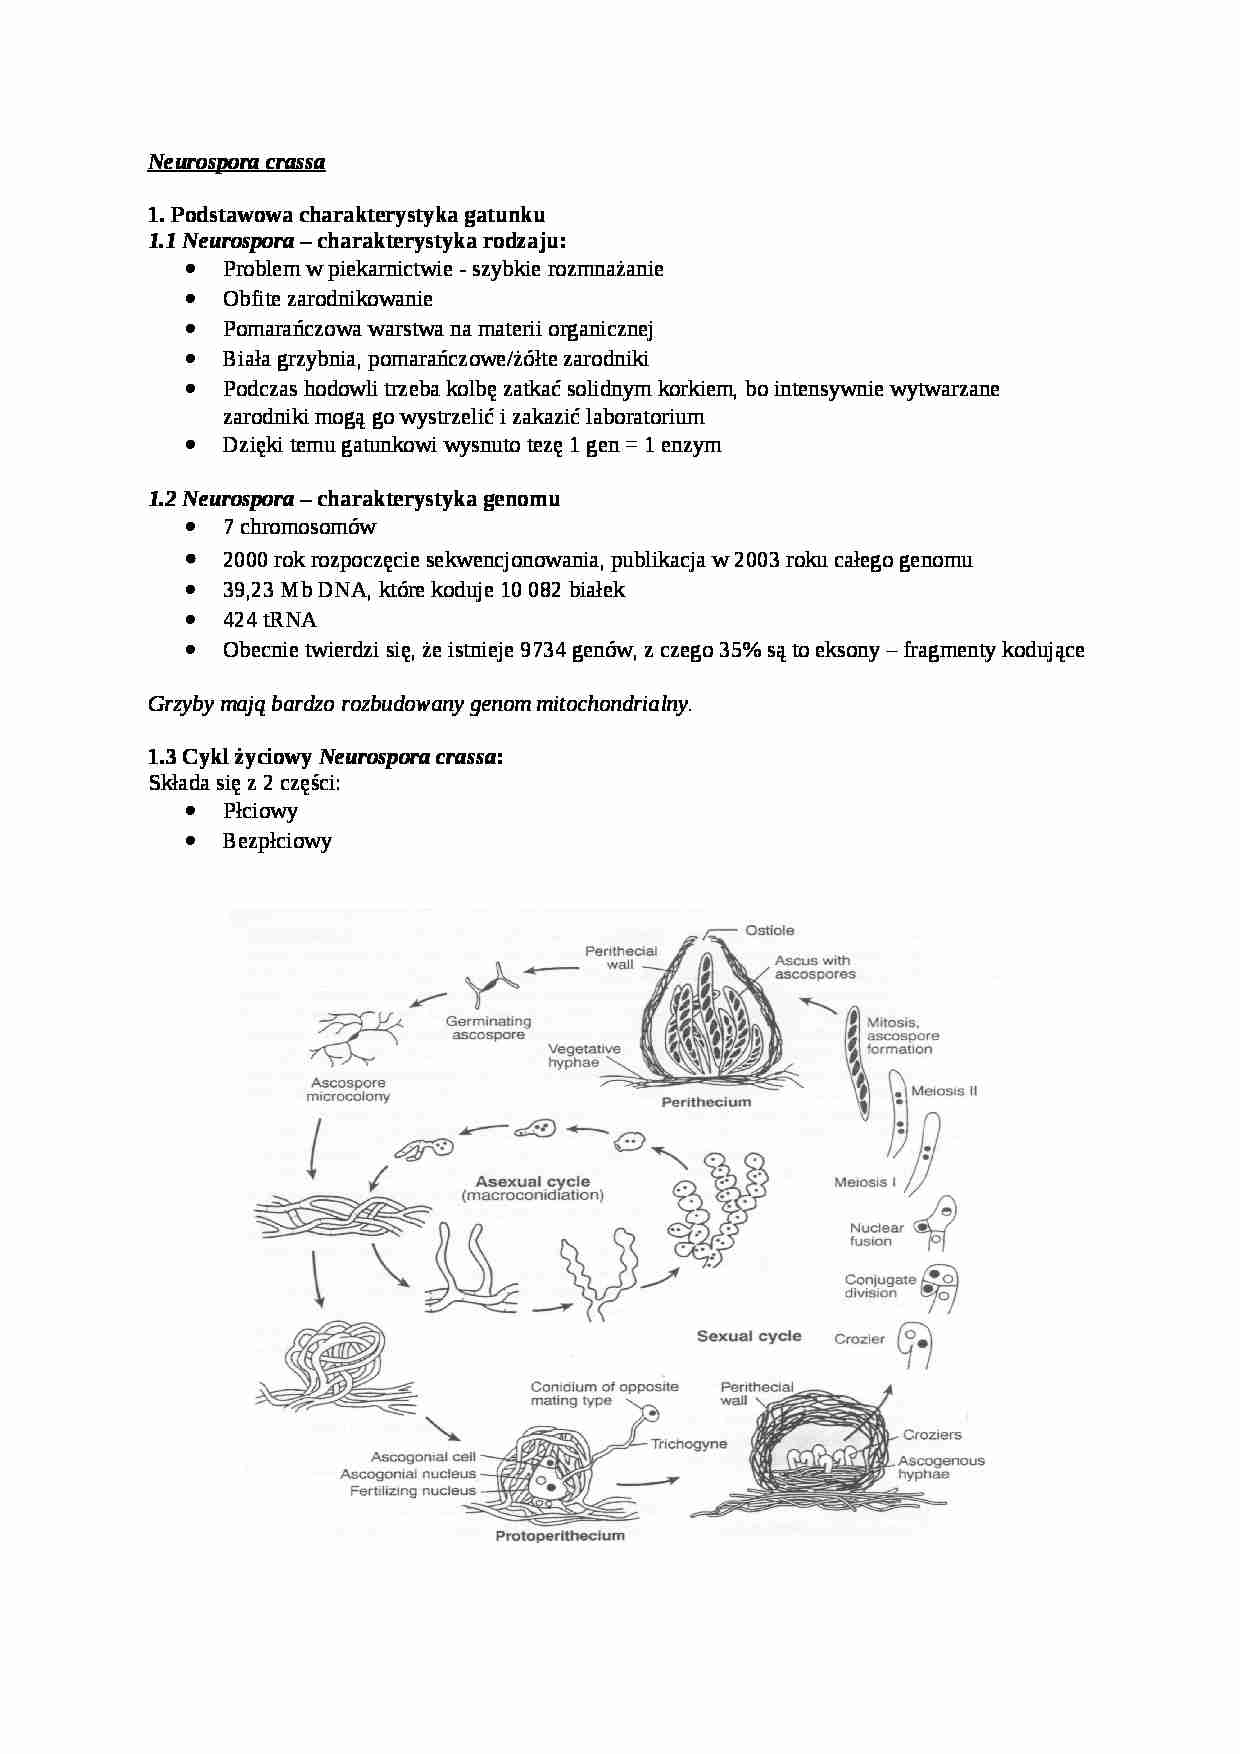 Genetyka grzybów, Neurospora crassa  - omówienie - strona 1